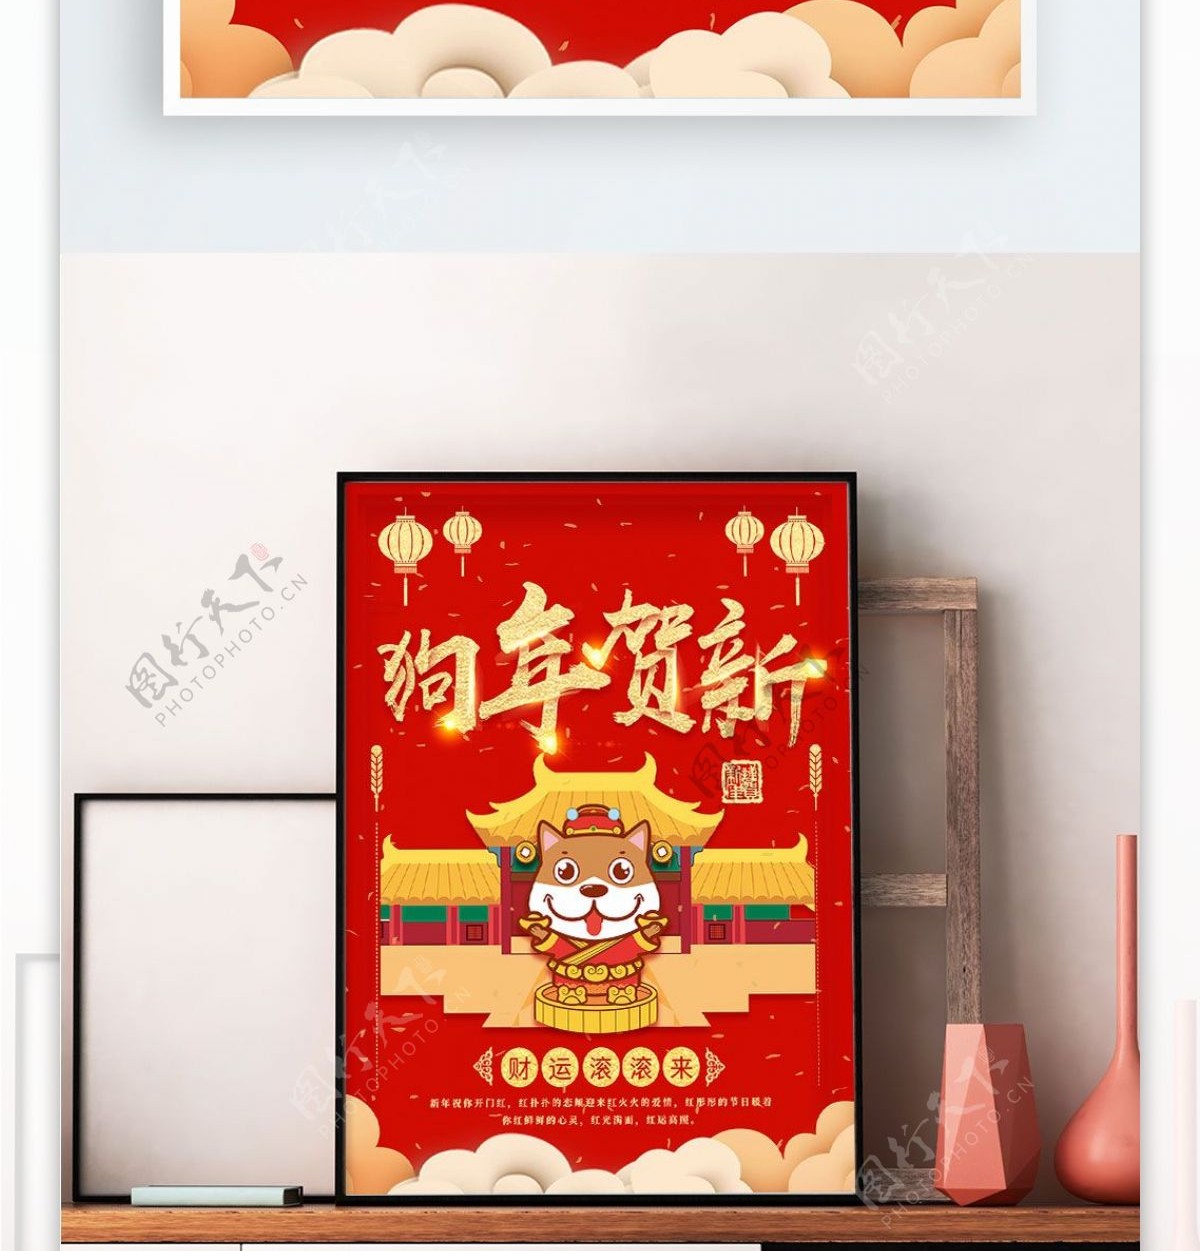 2018狗年贺新春节海报设计